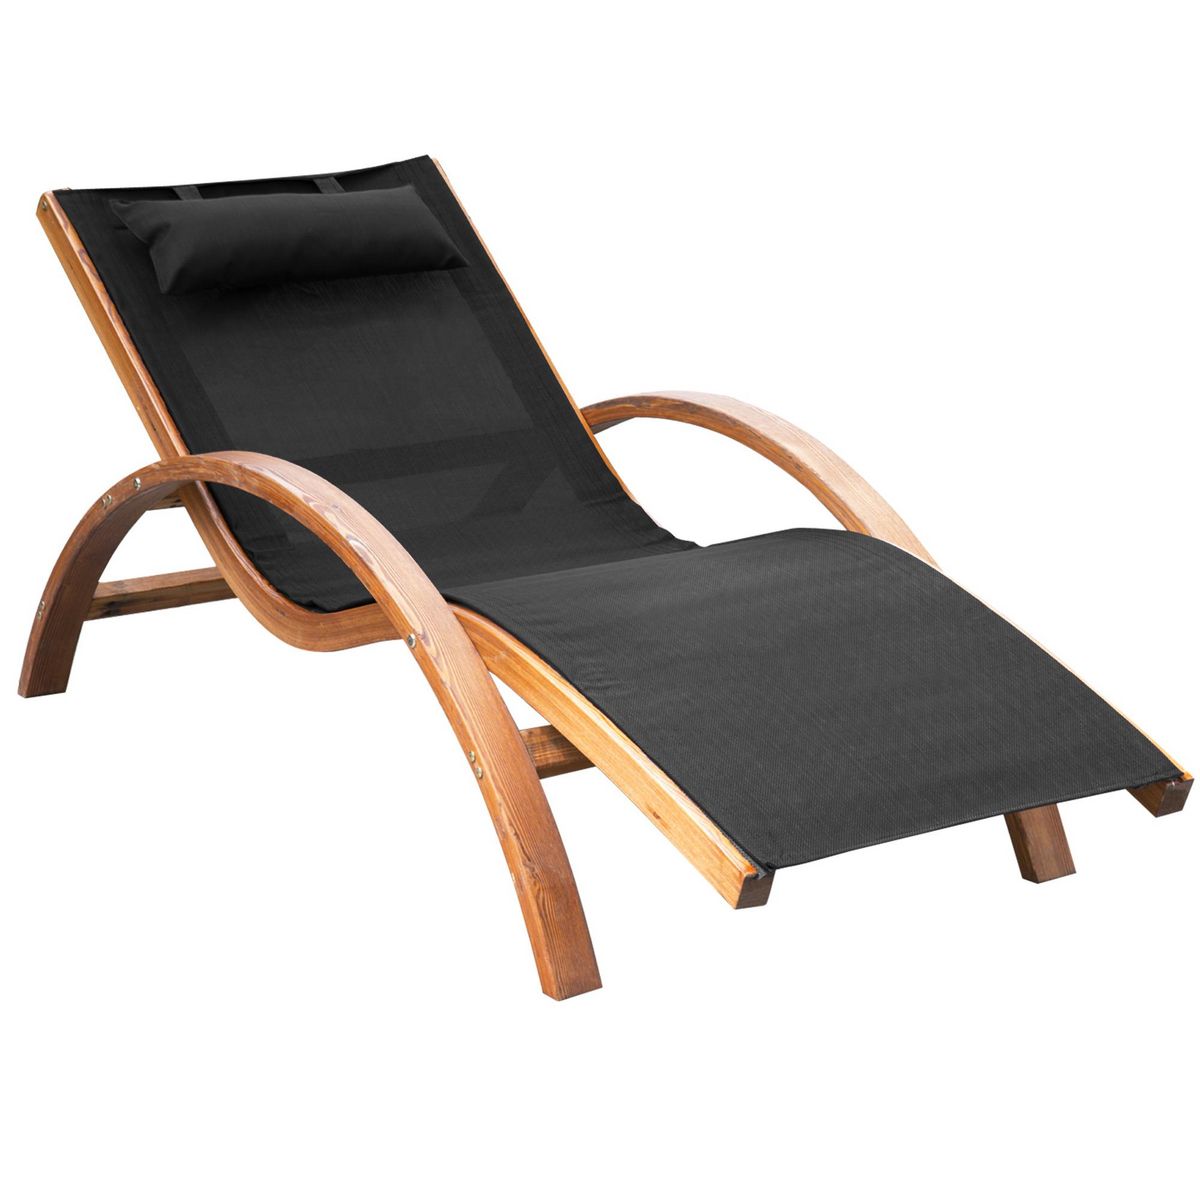 OUTSUNNY Transat chaise longue design style tropical bois massif naturel coloris beige noir